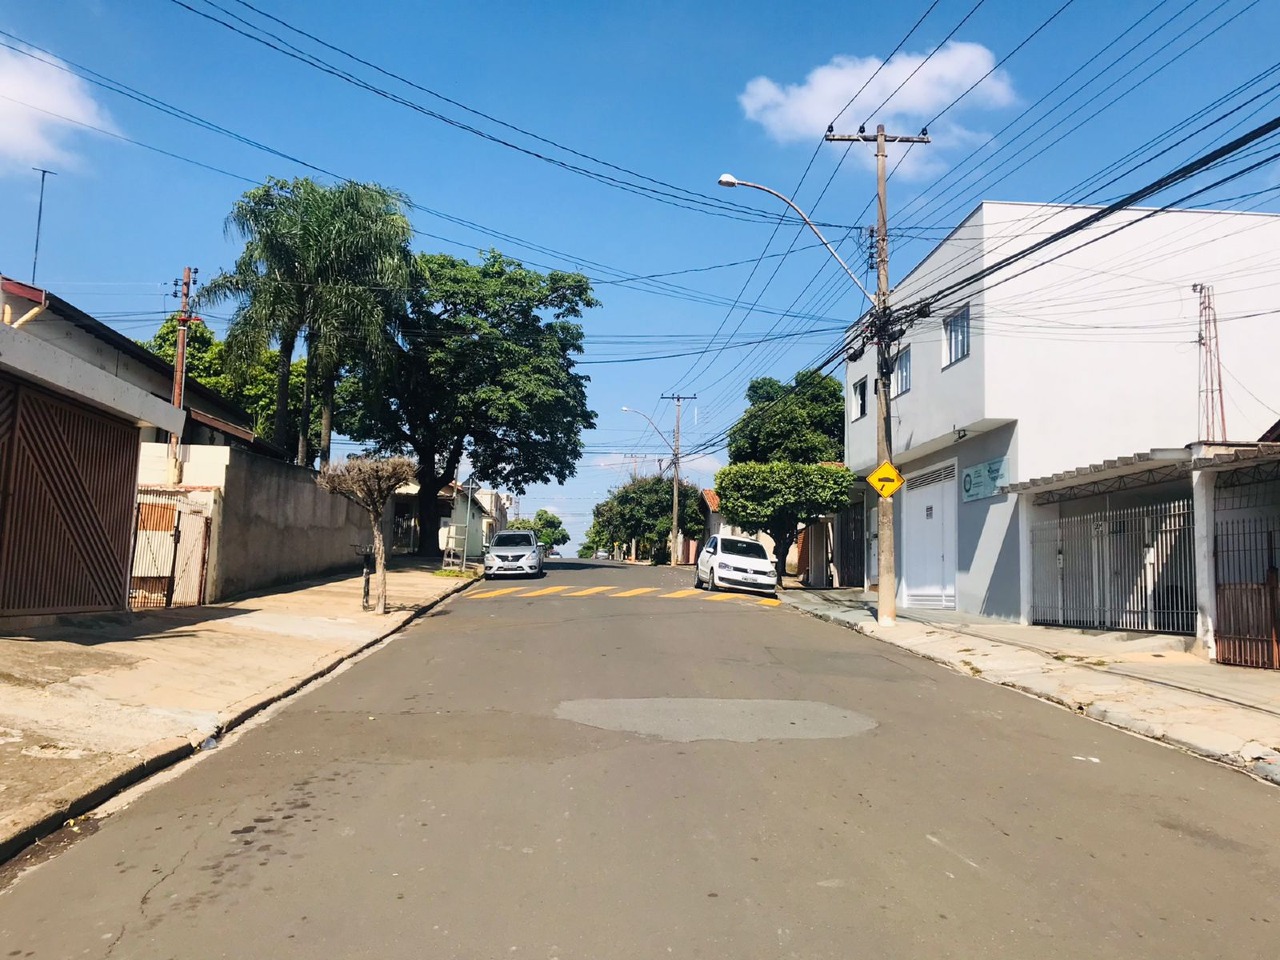 Terreno para comprar, no bairro Nossa Senhora de Fátima em Piracicaba - SP